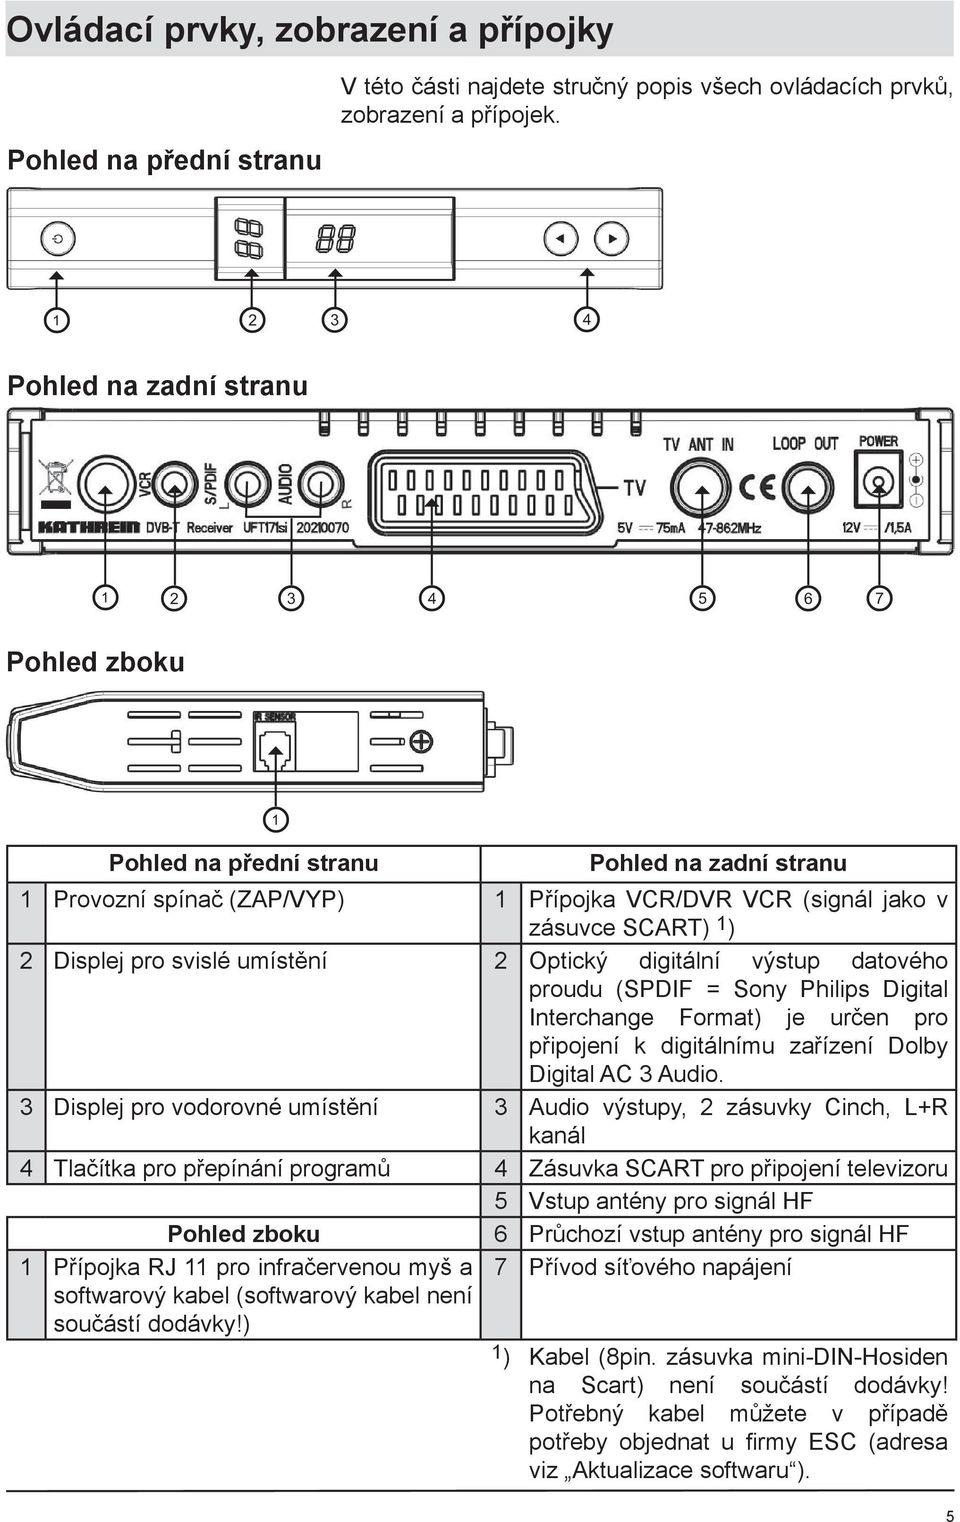 Optický digitální výstup datového proudu (SPDIF = Sony Philips Digital Interchange Format) je určen pro připojení k digitálnímu zařízení Dolby Digital AC 3 Audio.